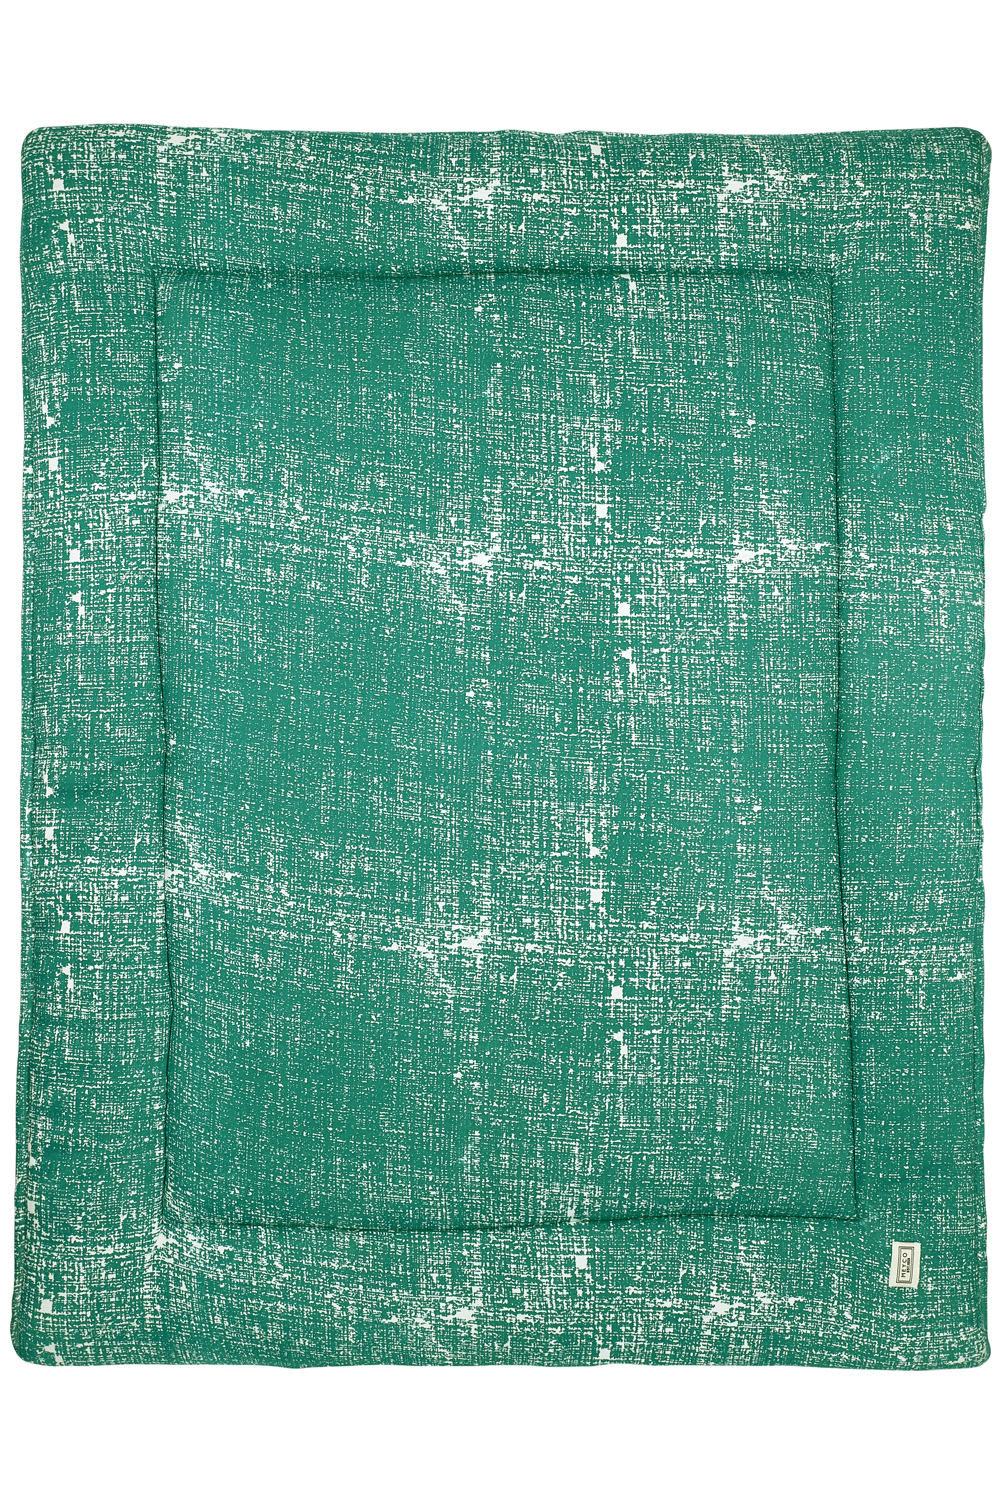 Laufgittereinlage Fine Lines - emerald green - 77x97cm